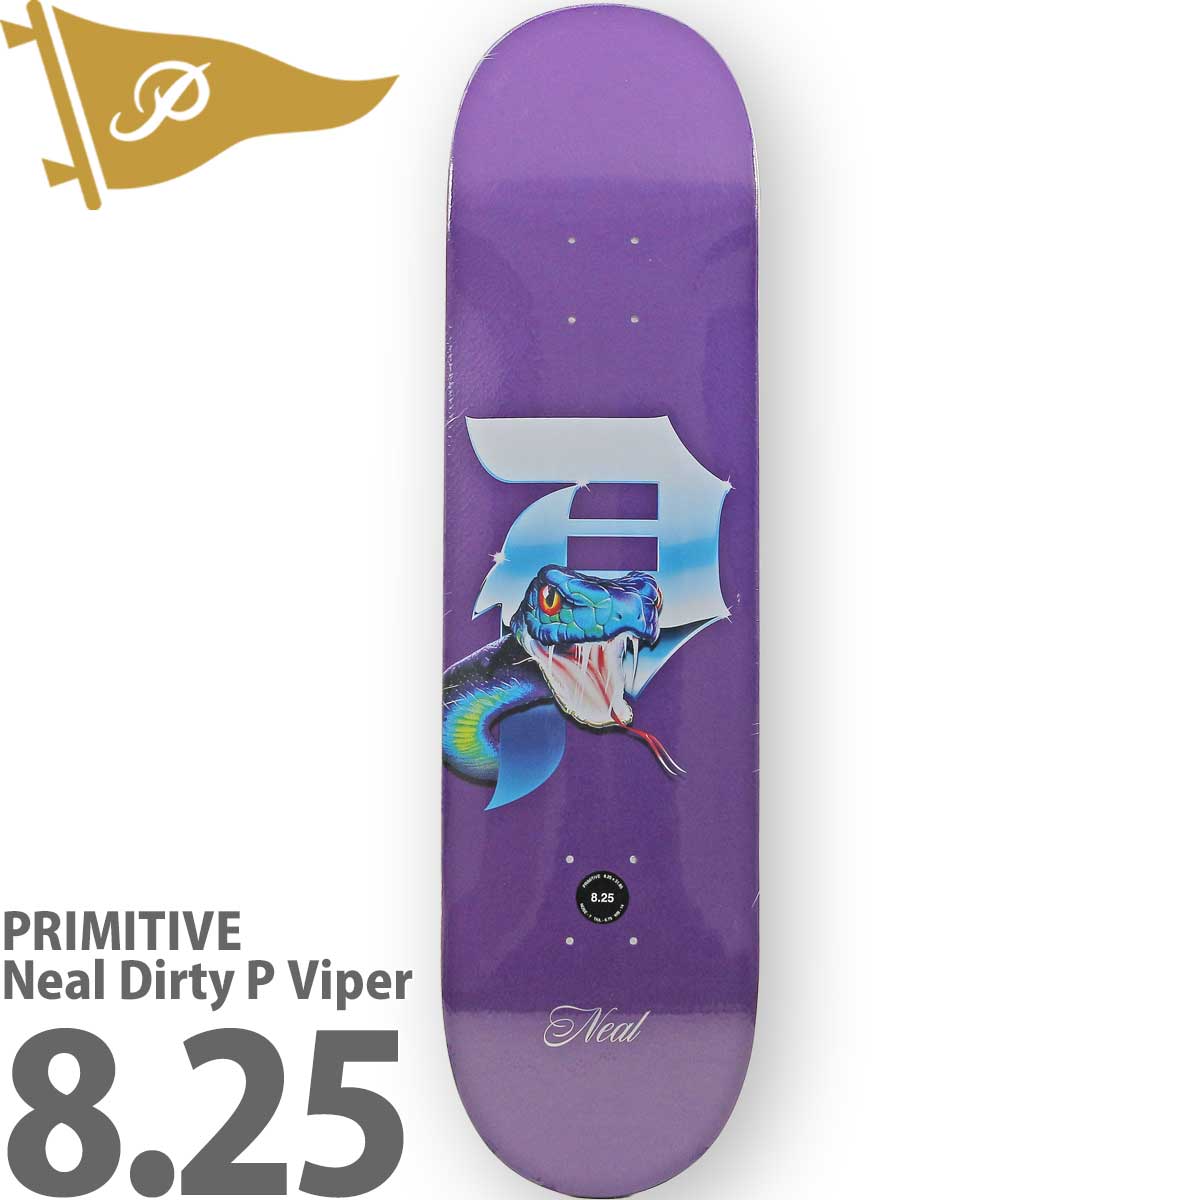 プリミティブ 8.25インチ スケボー デッキ Primitive Skateboards Pro Neal Dirty P Viper Deck  スケートボード ニール バイパー ブランド スケボーデッキ